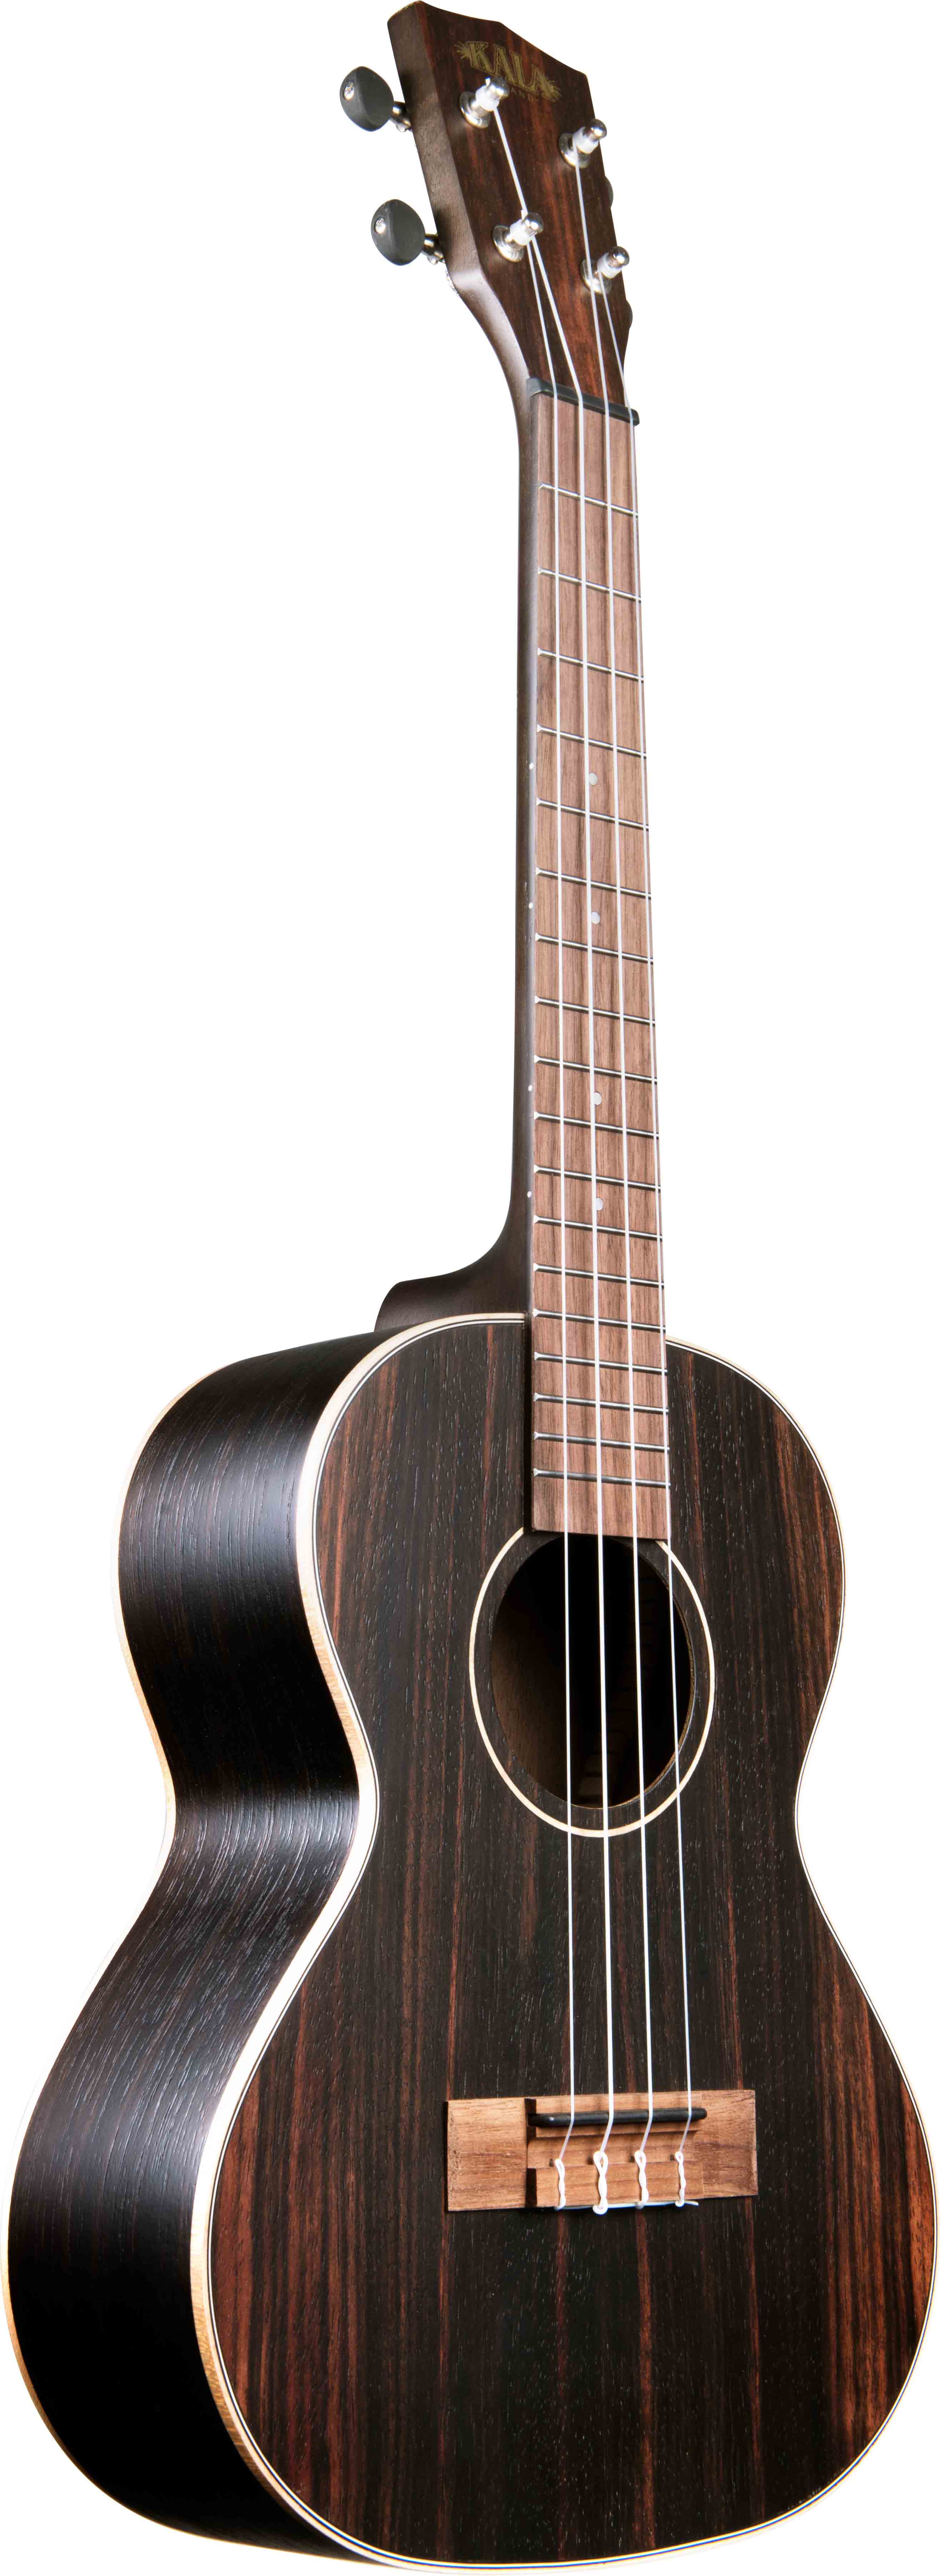 ebay kala tenor ukulele